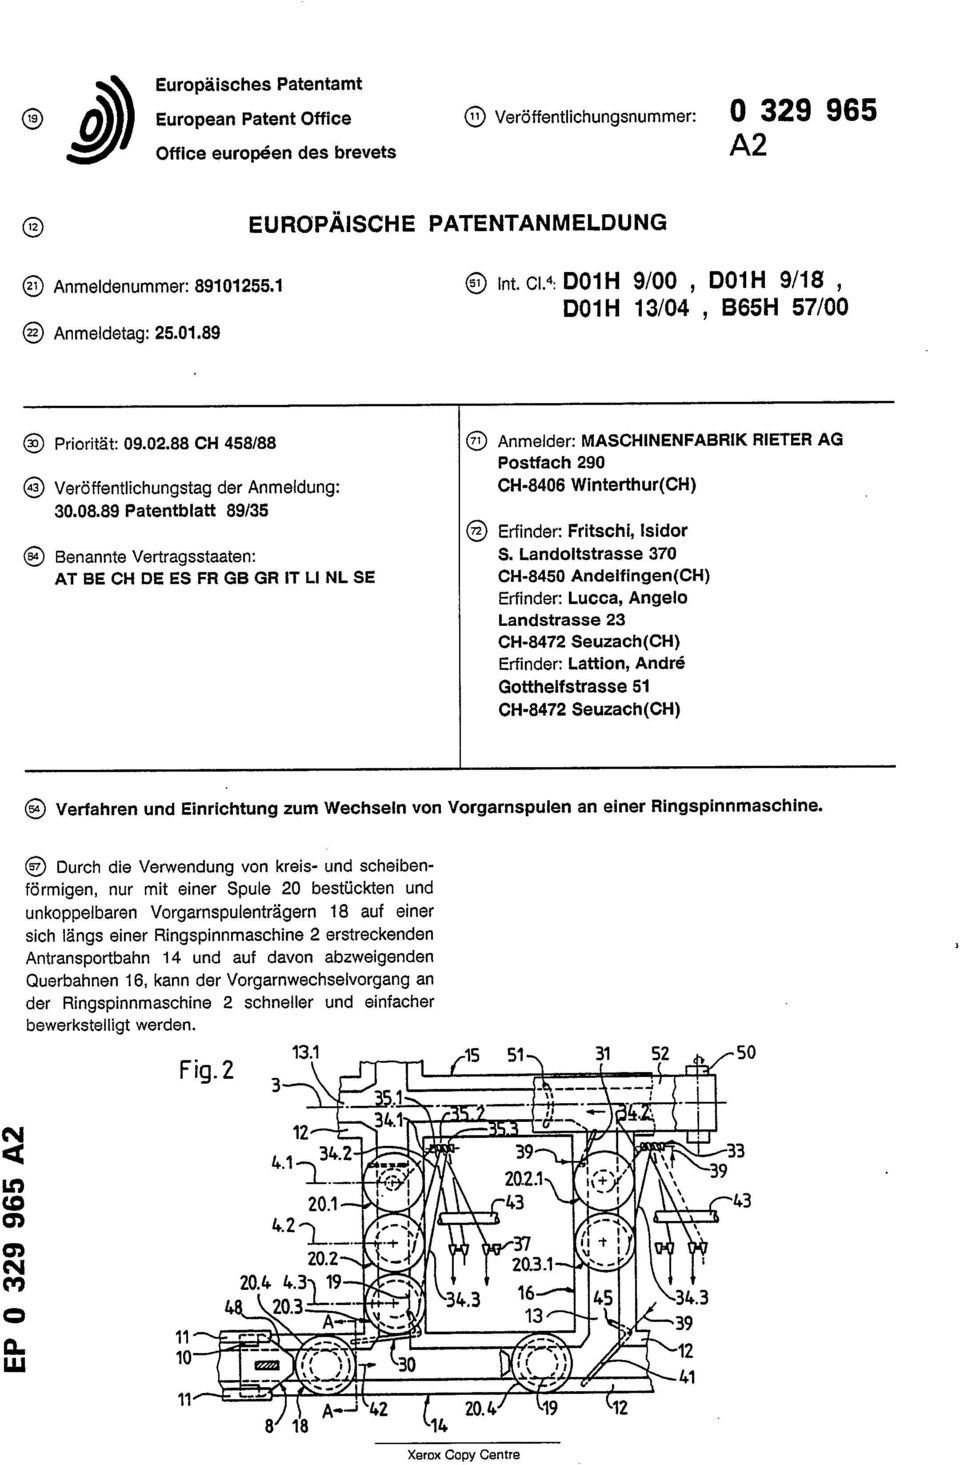 88 CH 458/88 Anmelder: MASCHINENFABRIK RIETER AG Postfach 290 Veroffentlichungstag der Anmeldung: CH-8406 Winterthur(CH) 30.08.